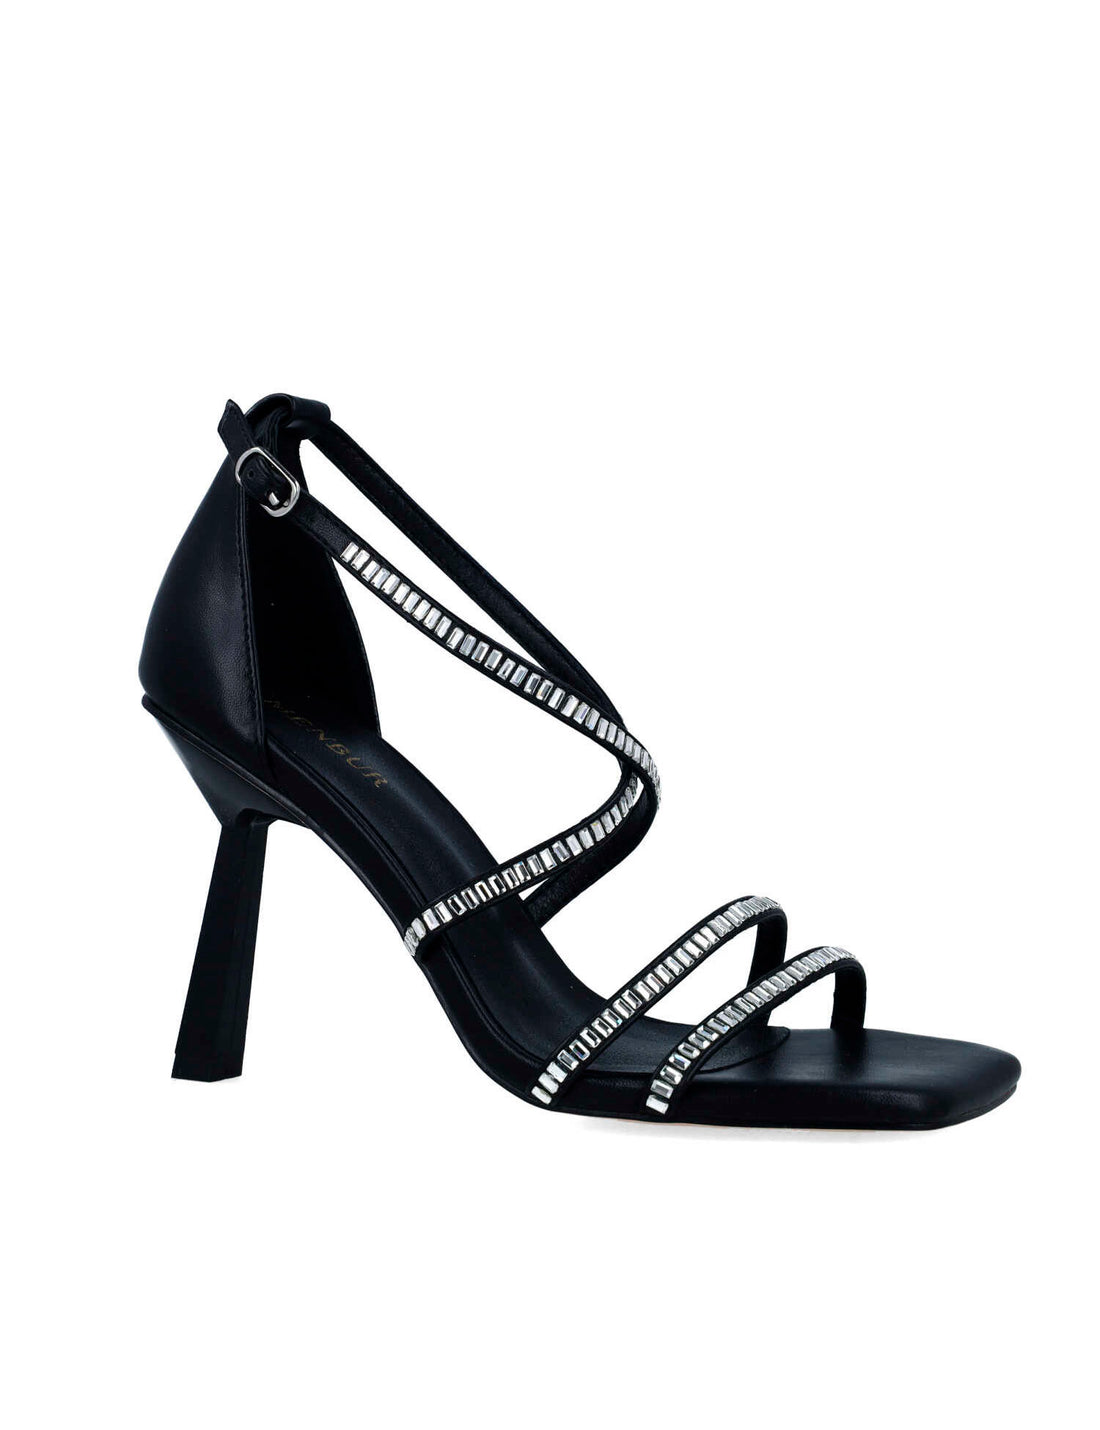 Black High-Heel Sandals With Embellished Straps_24775_01_02